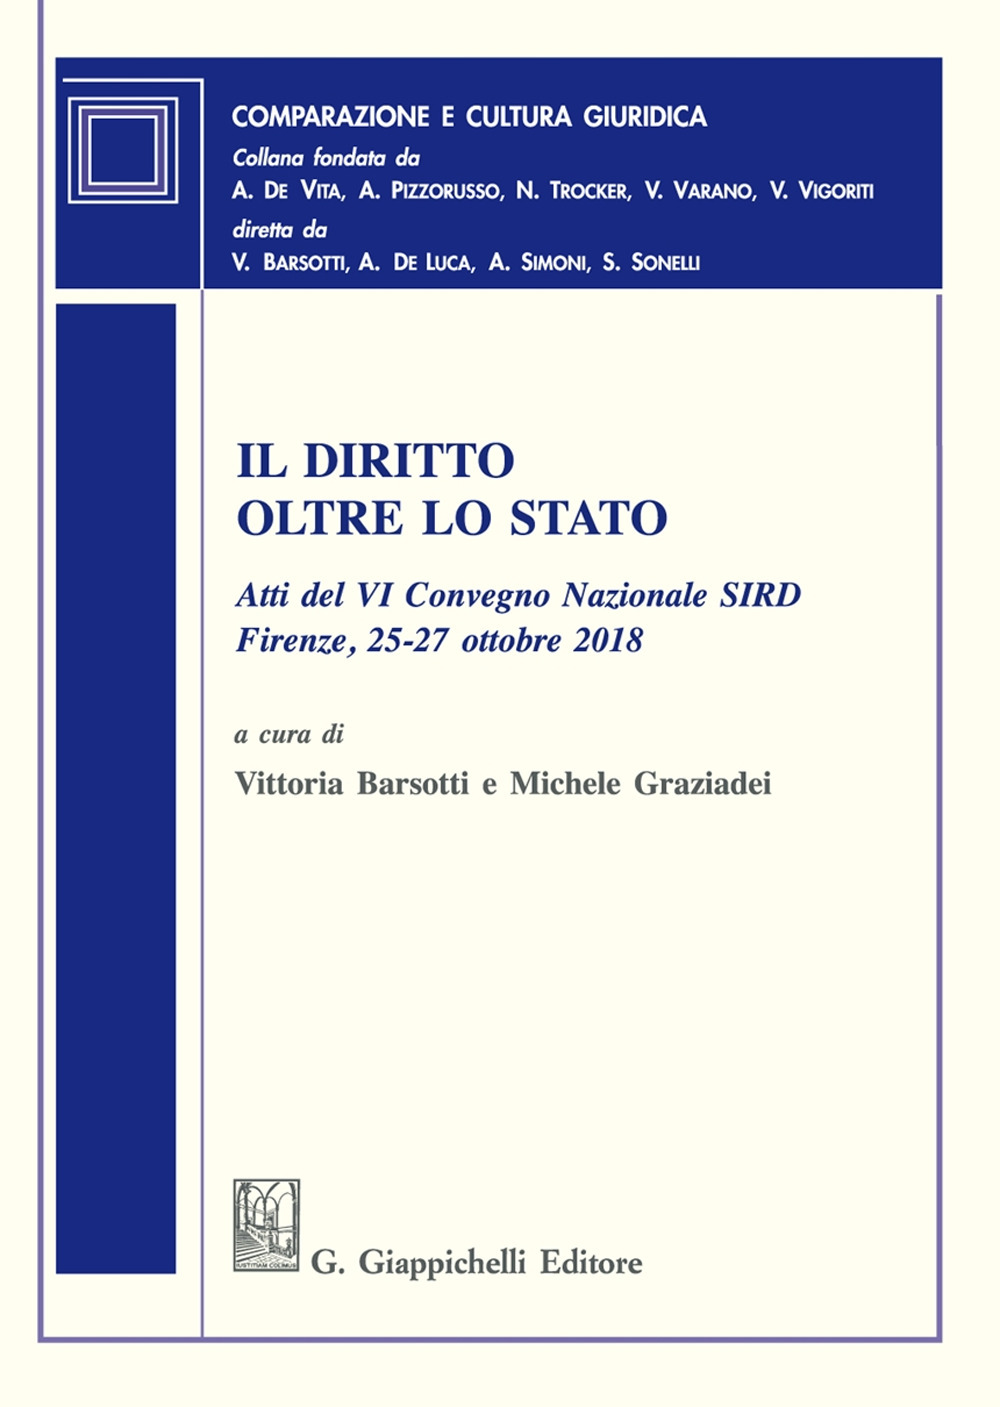 Il diritto oltre lo Stato. Atti del VI Convegno nazionale SIRD (Firenze, 25-27 ottobre 2018)